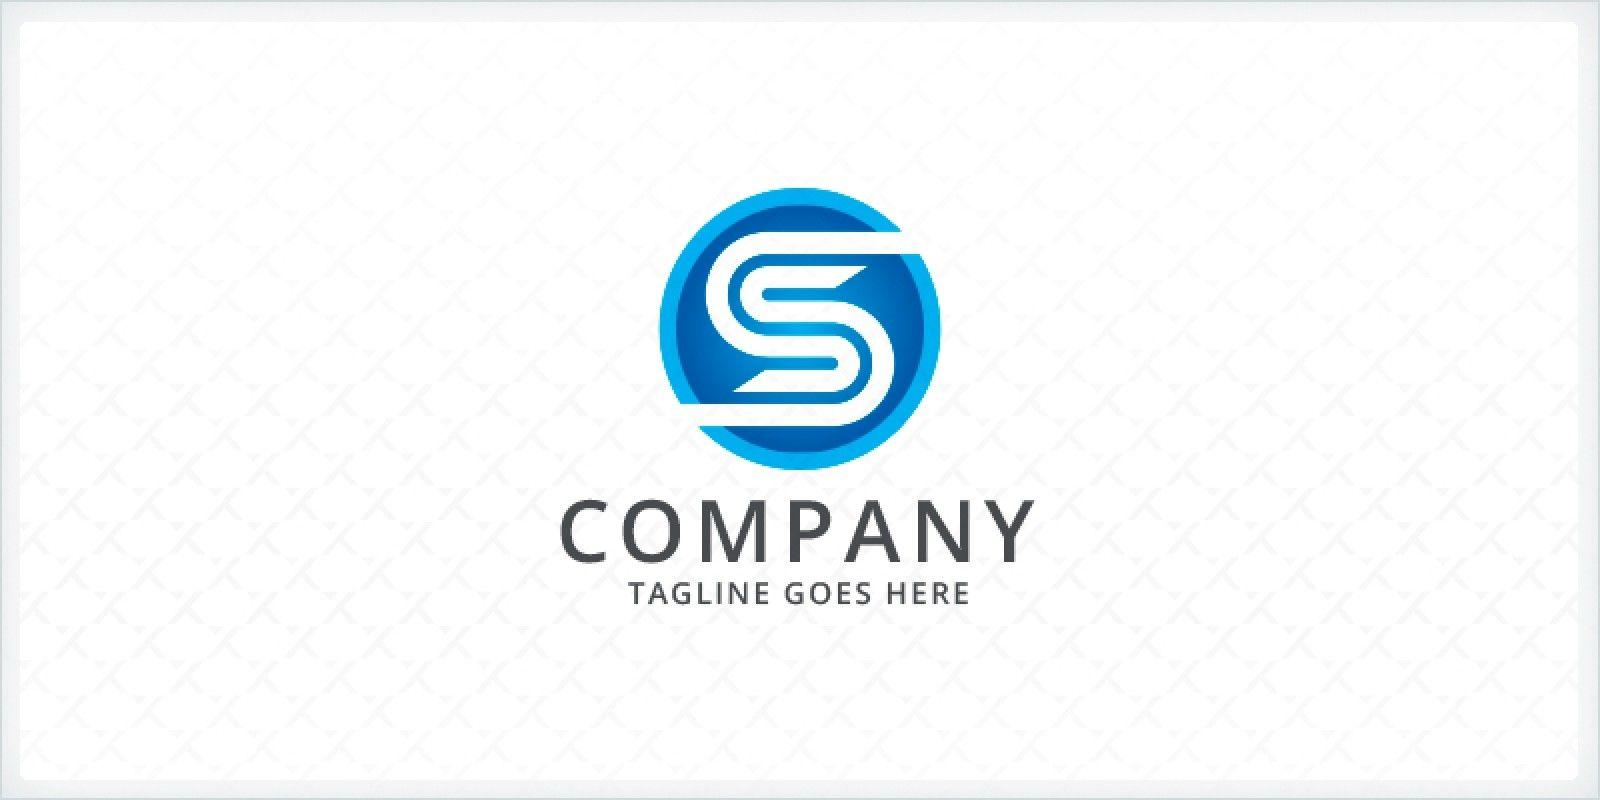 SS Logo - Letter S or SS Logo